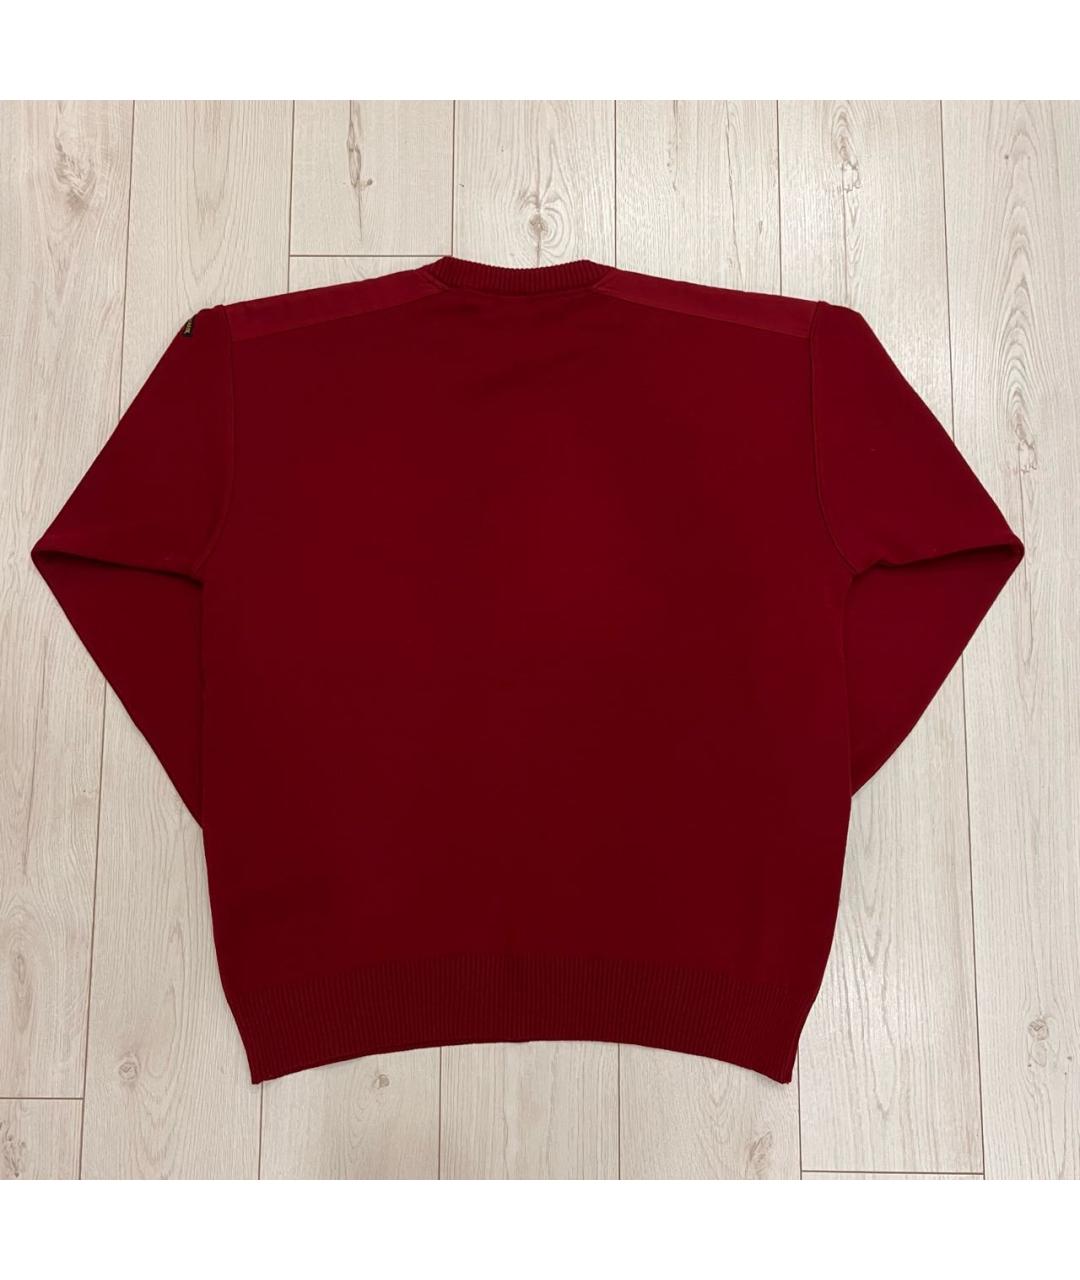 PAUL & SHARK Бордовый шерстяной джемпер / свитер, фото 2